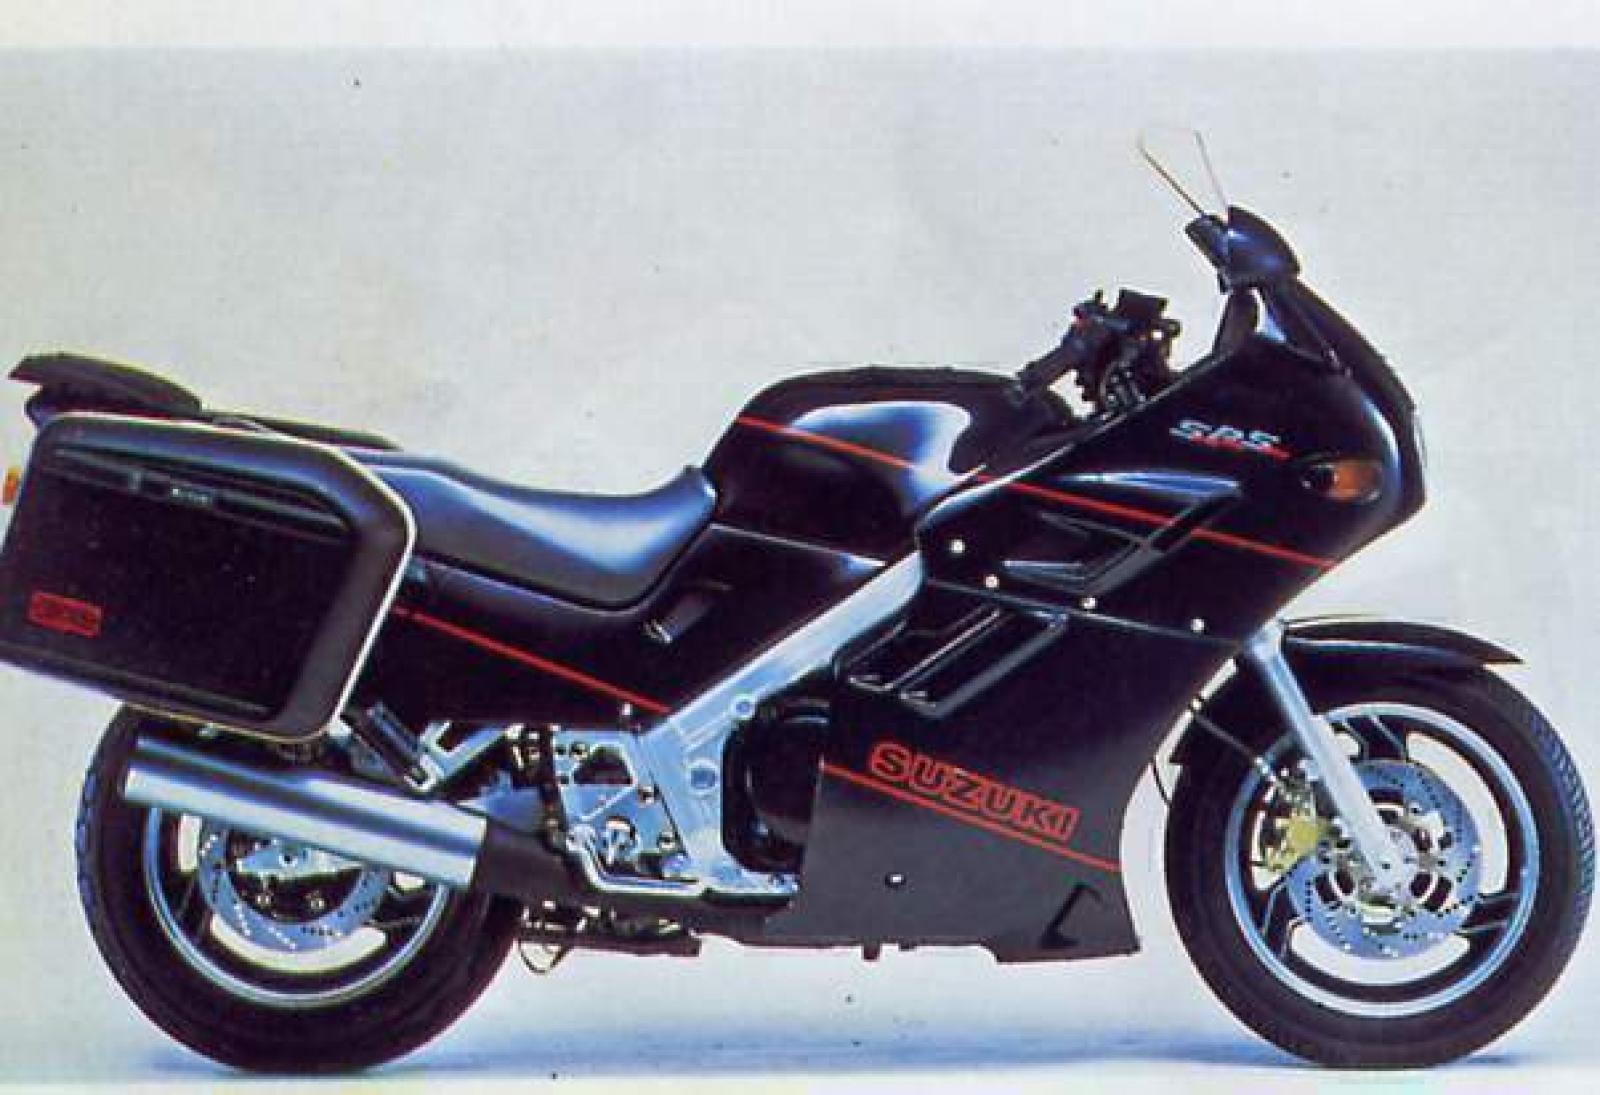 1988 Suzuki GSX 1100 F (reduced effect)